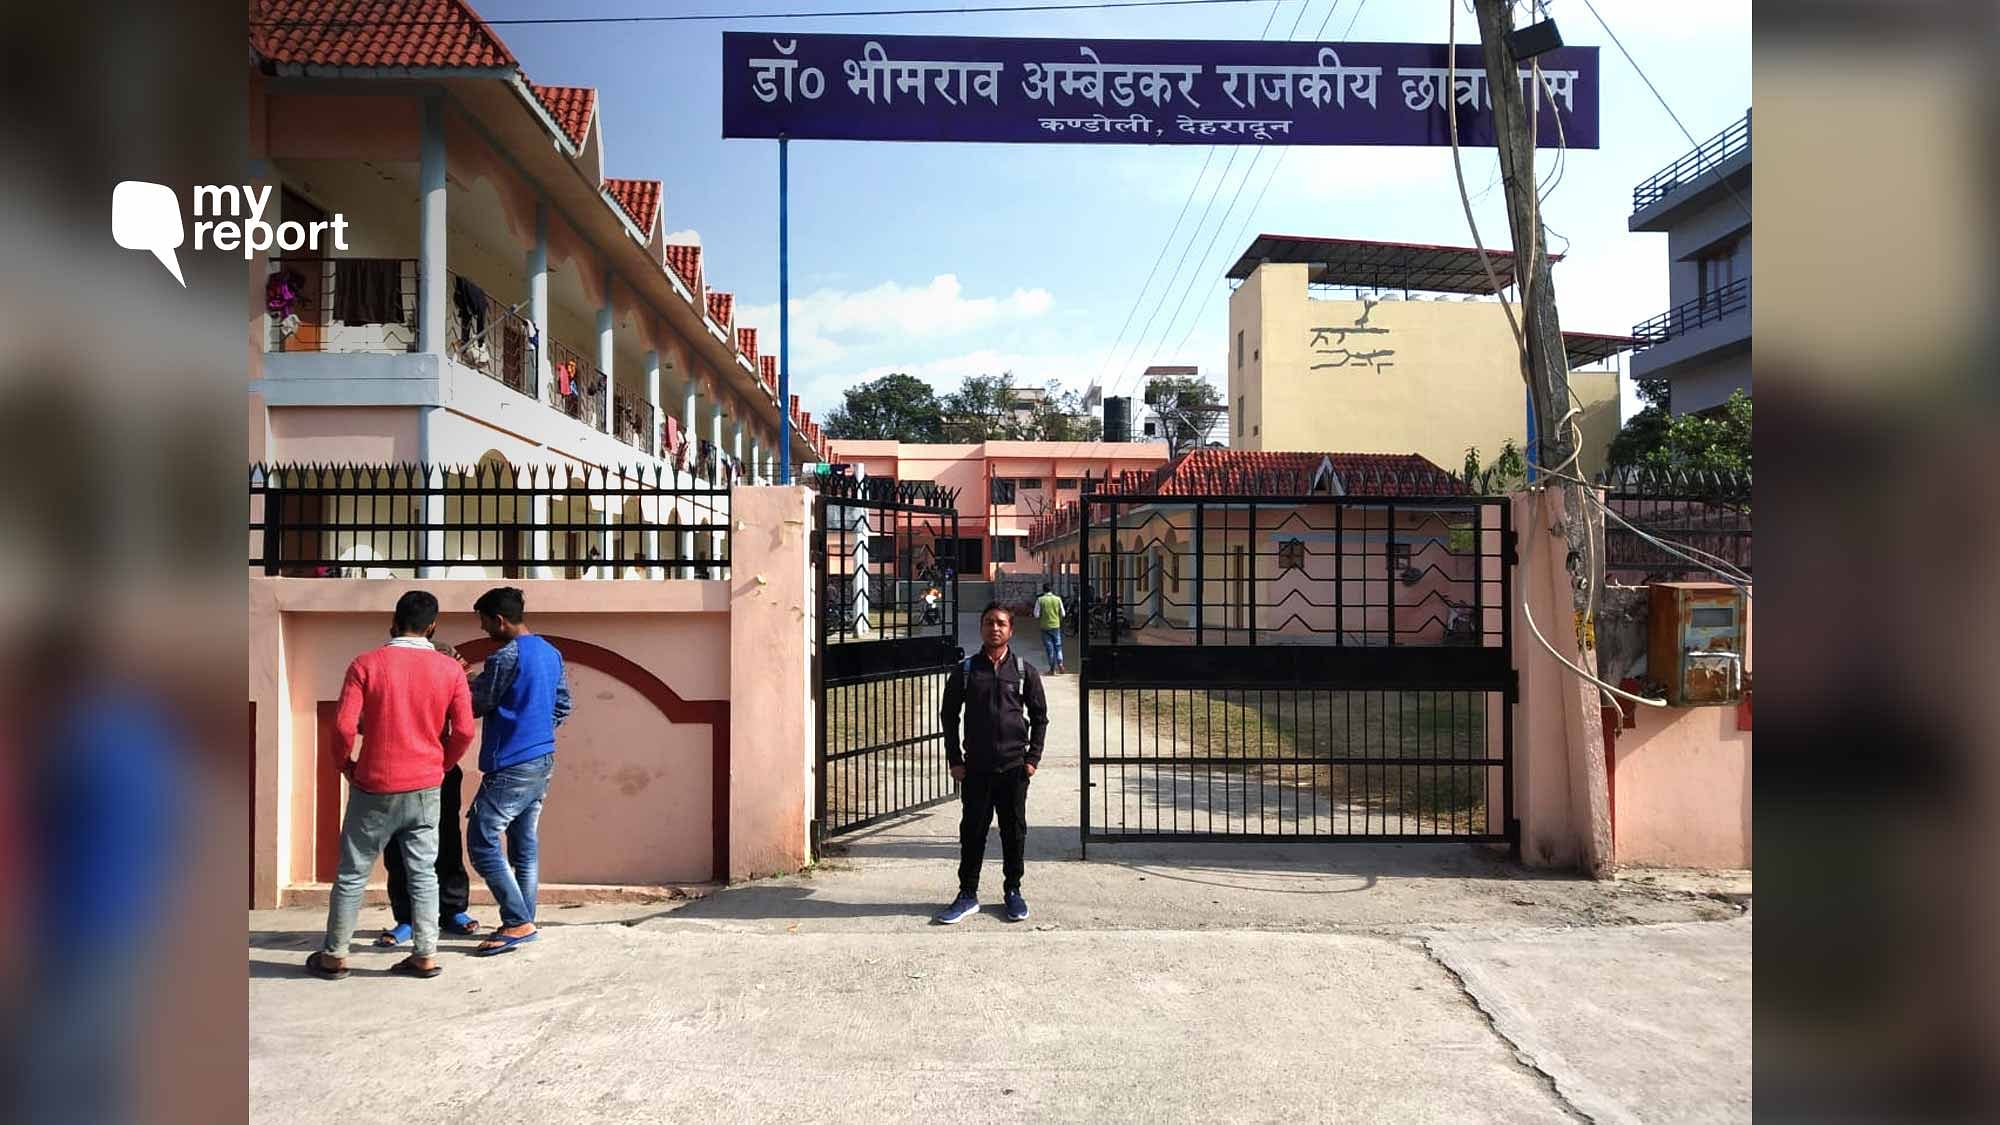 Kishore Kumar checks in on the status of Dr Ambedkar hostels for Scheduled Castes, in Uttarakhand.